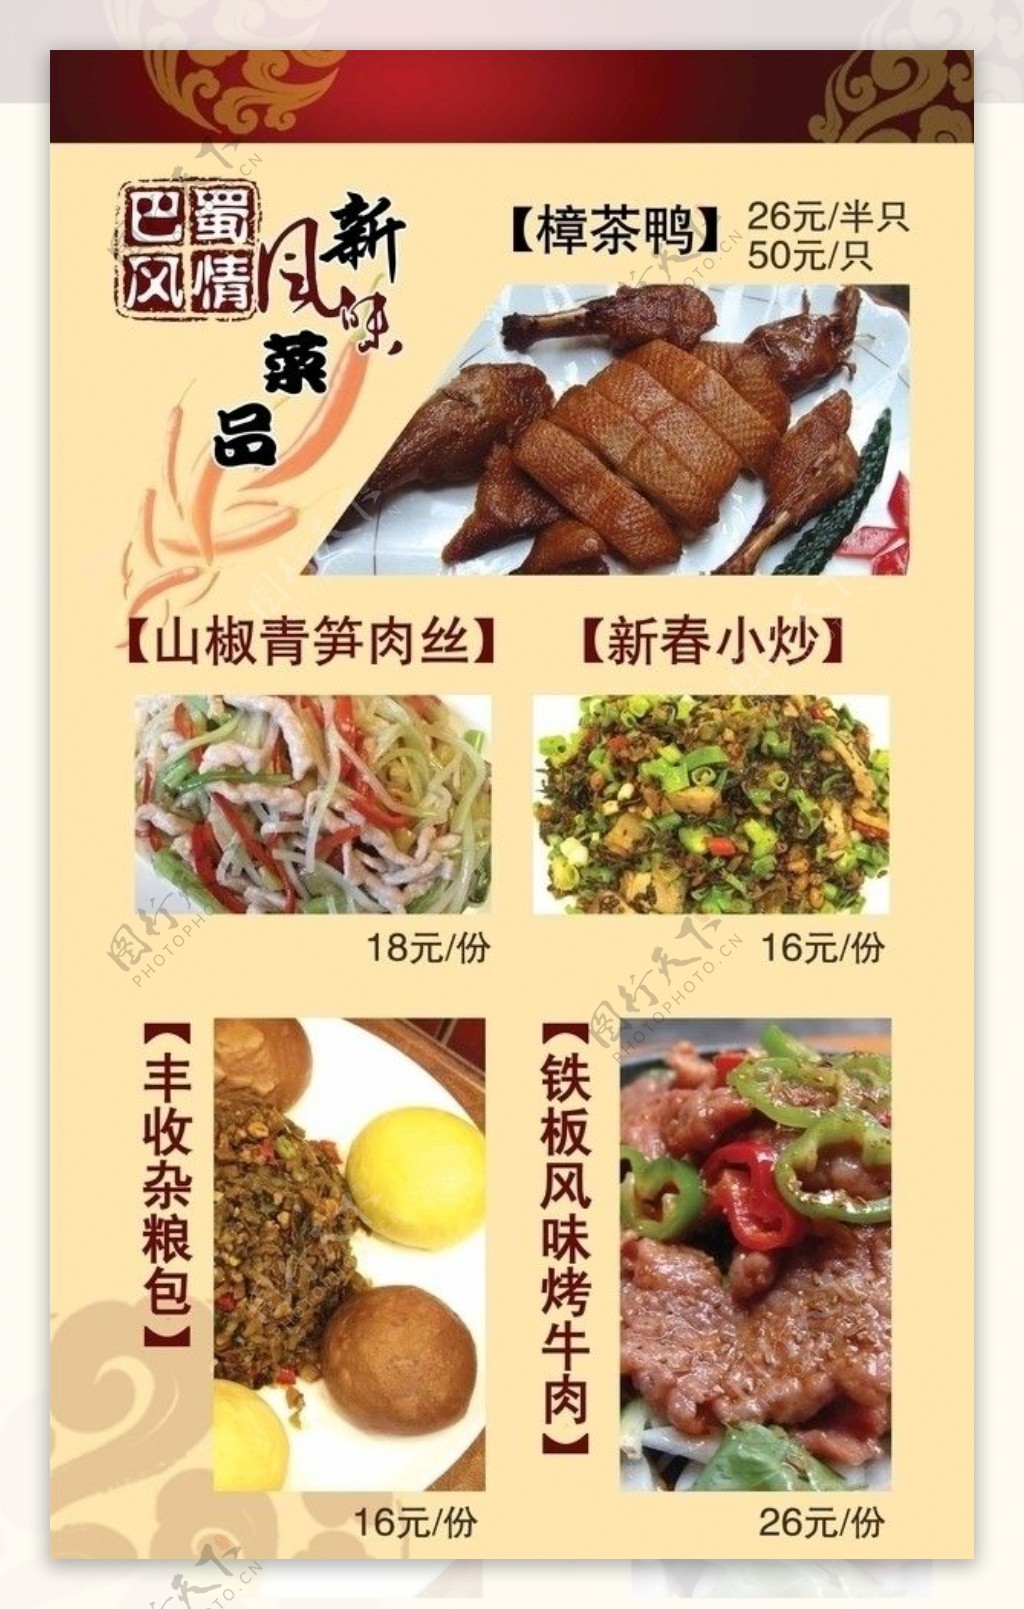 巴蜀风情川味餐厅新风味菜品图片